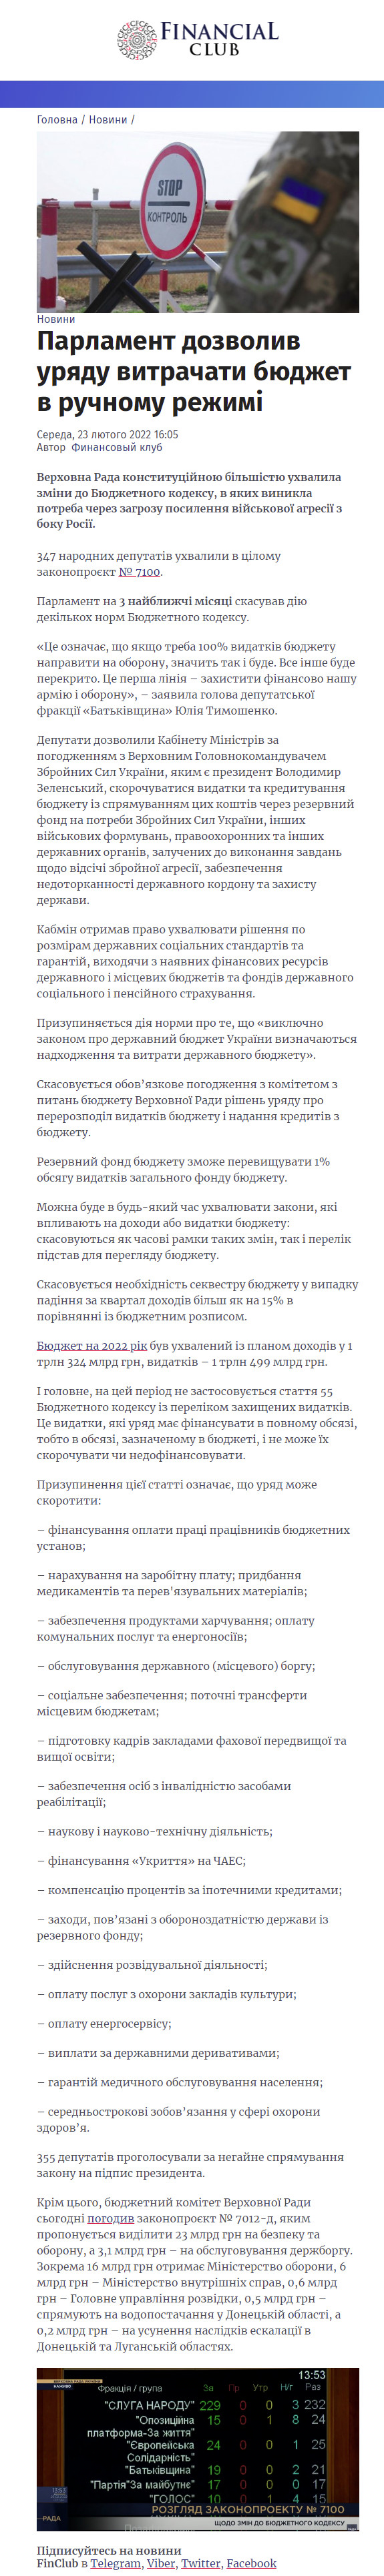 https://finclub.net/ua/news/parlament-dozvolyv-uriadu-vytrachaty-biudzhet-v-ruchnomu-rezhymi.html